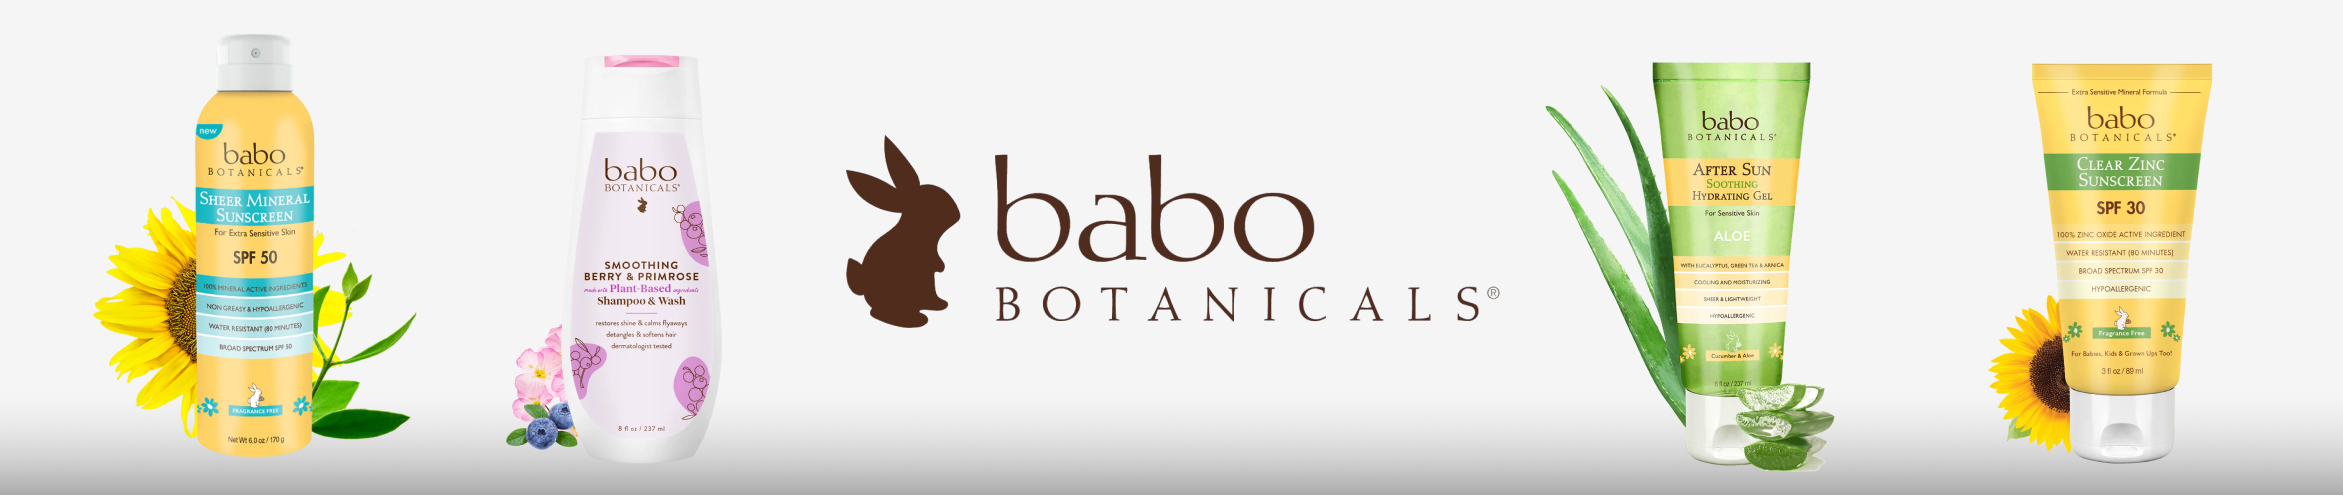 Babo Botanicals - Body Wash & Shower Gel